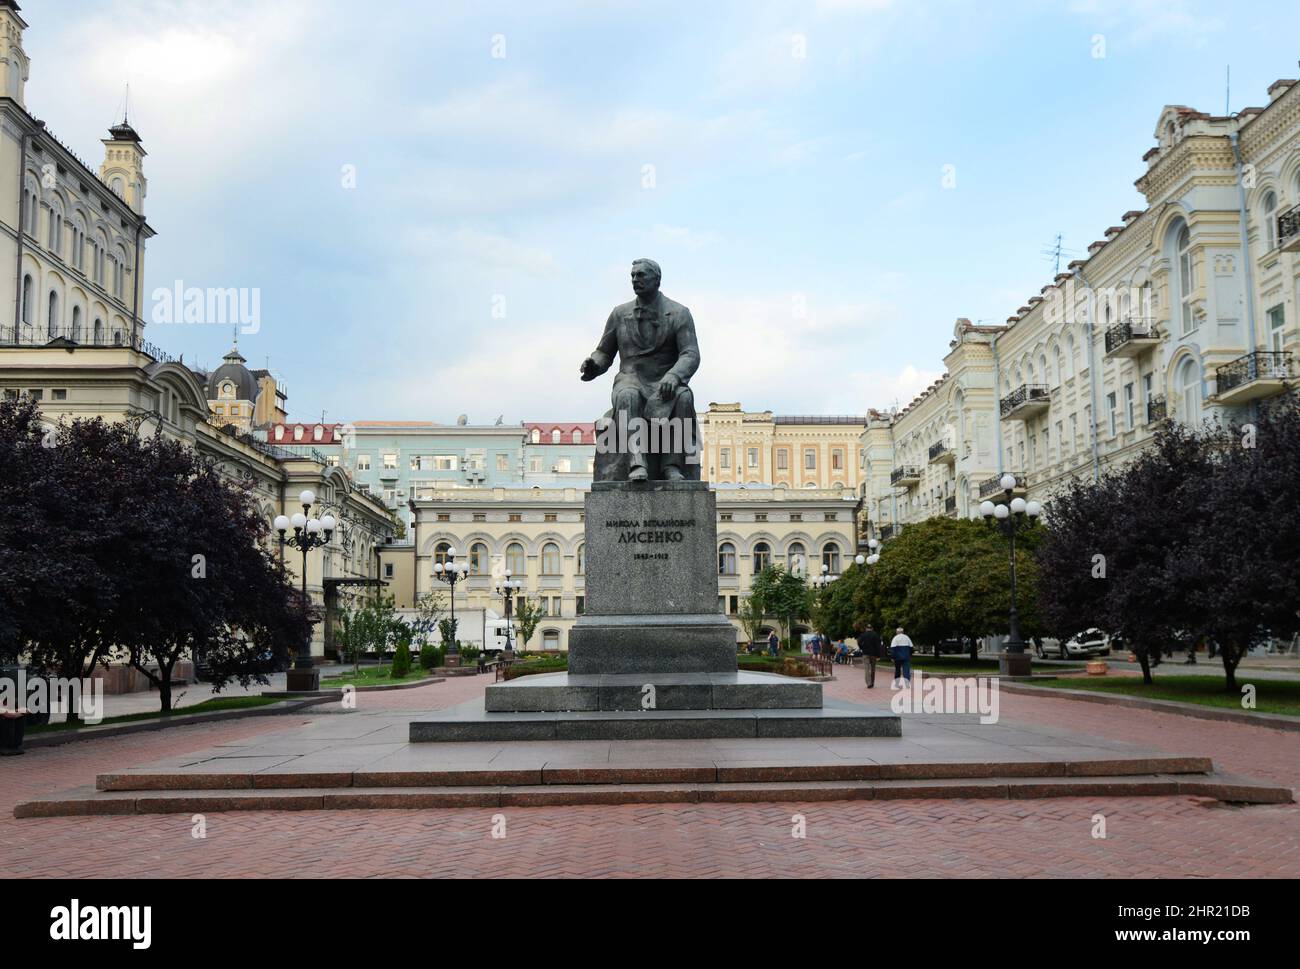 Monument to Mykola Lysenko in Kyiv, Ukraine. Stock Photo